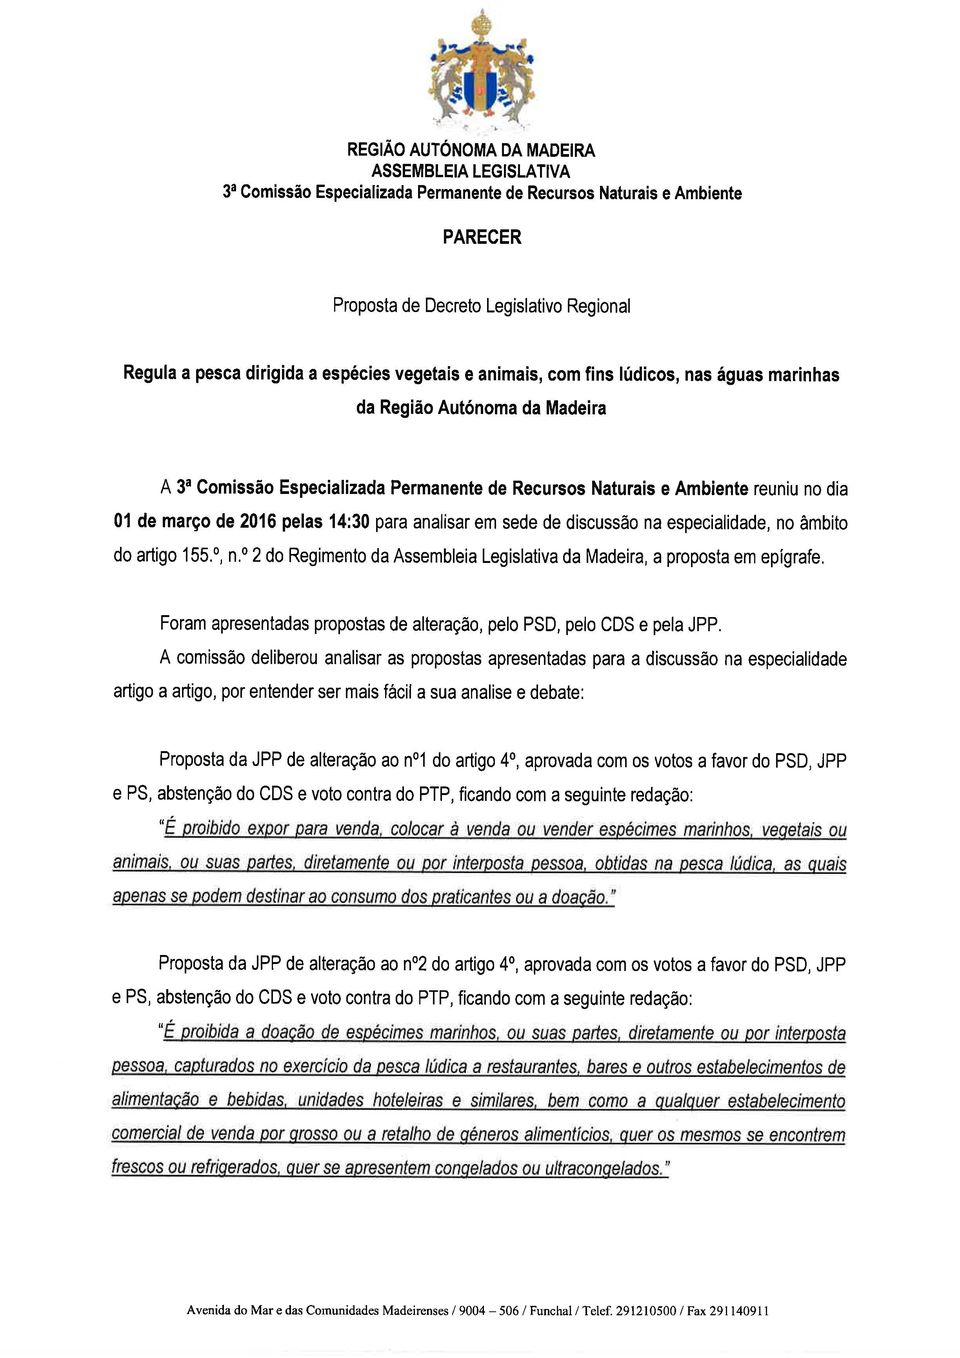 em sede de discussäo na especialidade, no âmbito do artigo 155.0, n.0 2 do Regimento da Assembleia Legislativa da Madeira, a proposta em epígrafe.